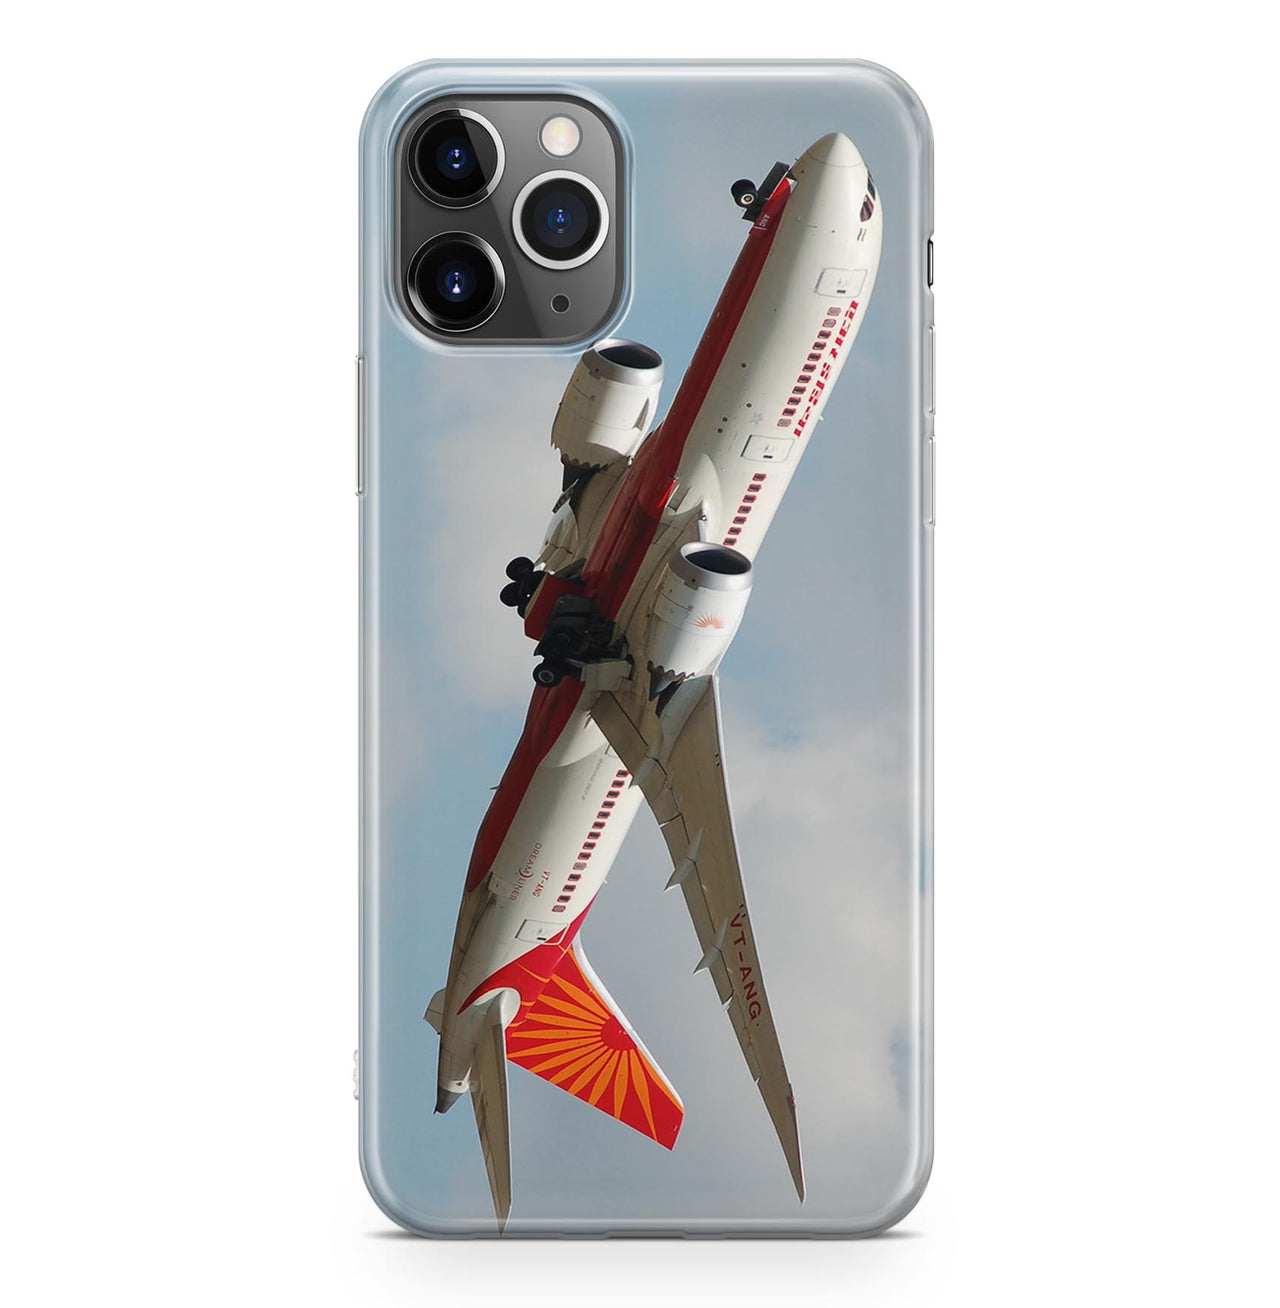 Air India's Boeing 787 Designed iPhone Cases